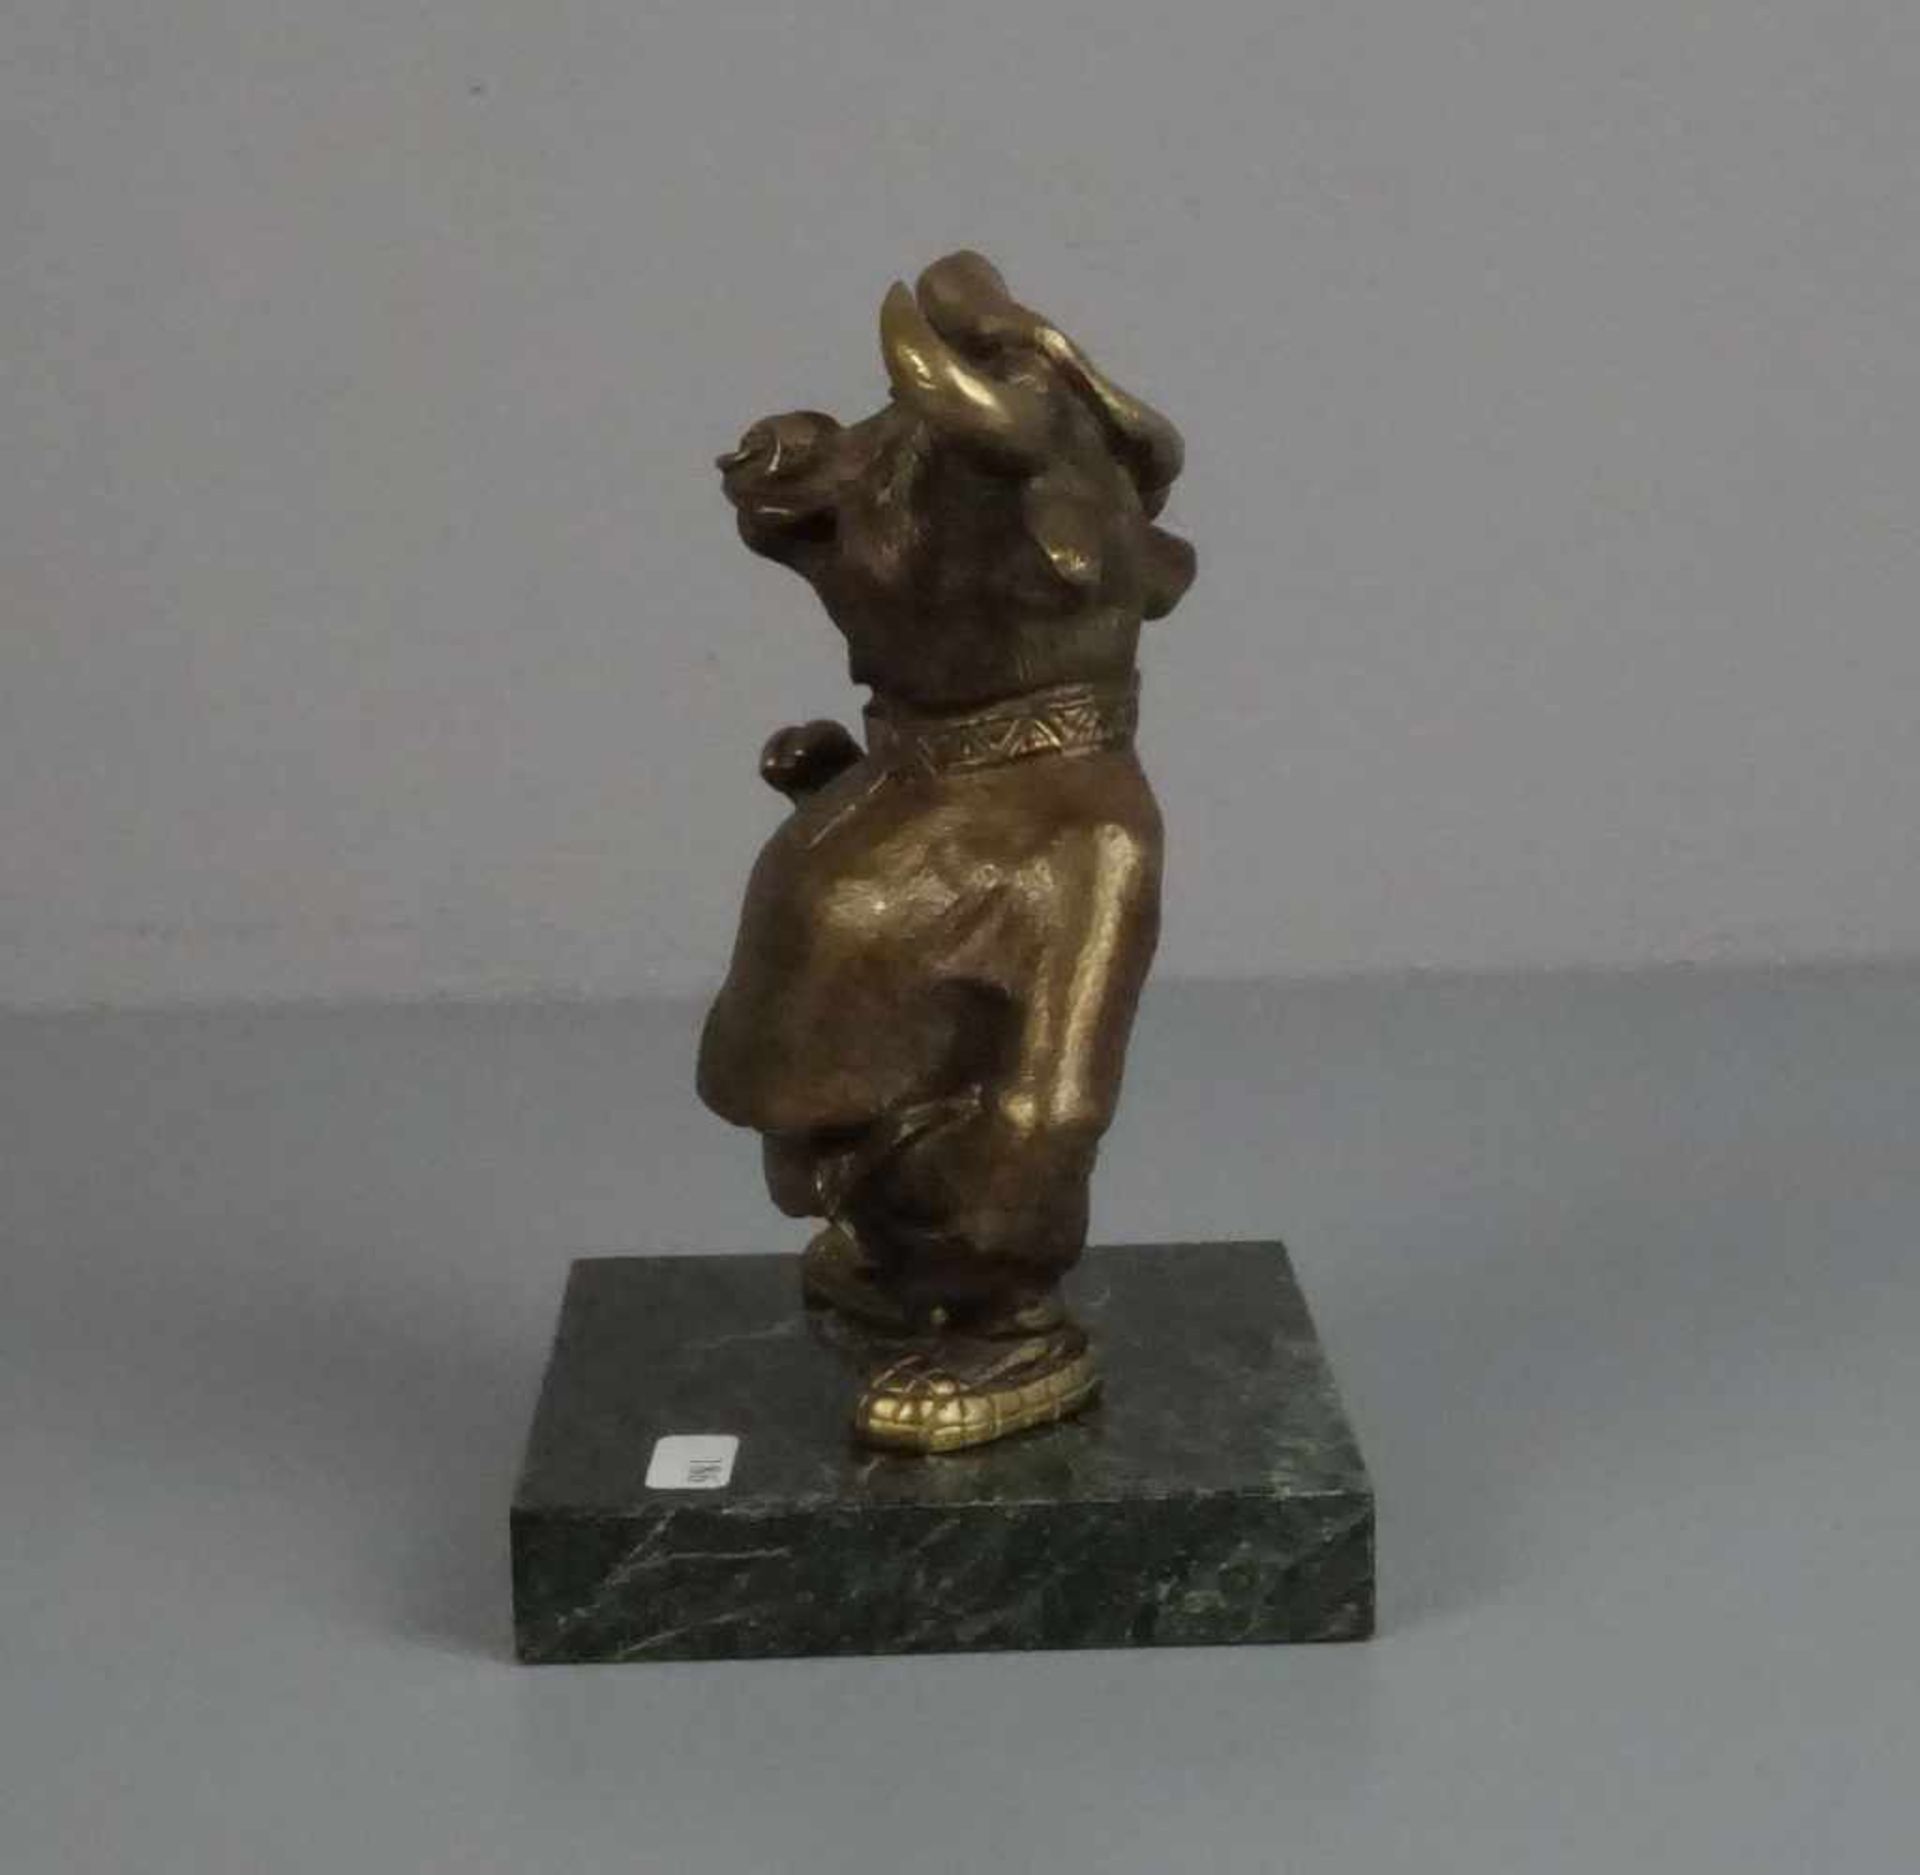 RUSSISCHER BILDHAUER DES 20./21. Jh., Skulptur / sculpture: "Stier als Kosake", Bronze, patiniert, - Image 2 of 5